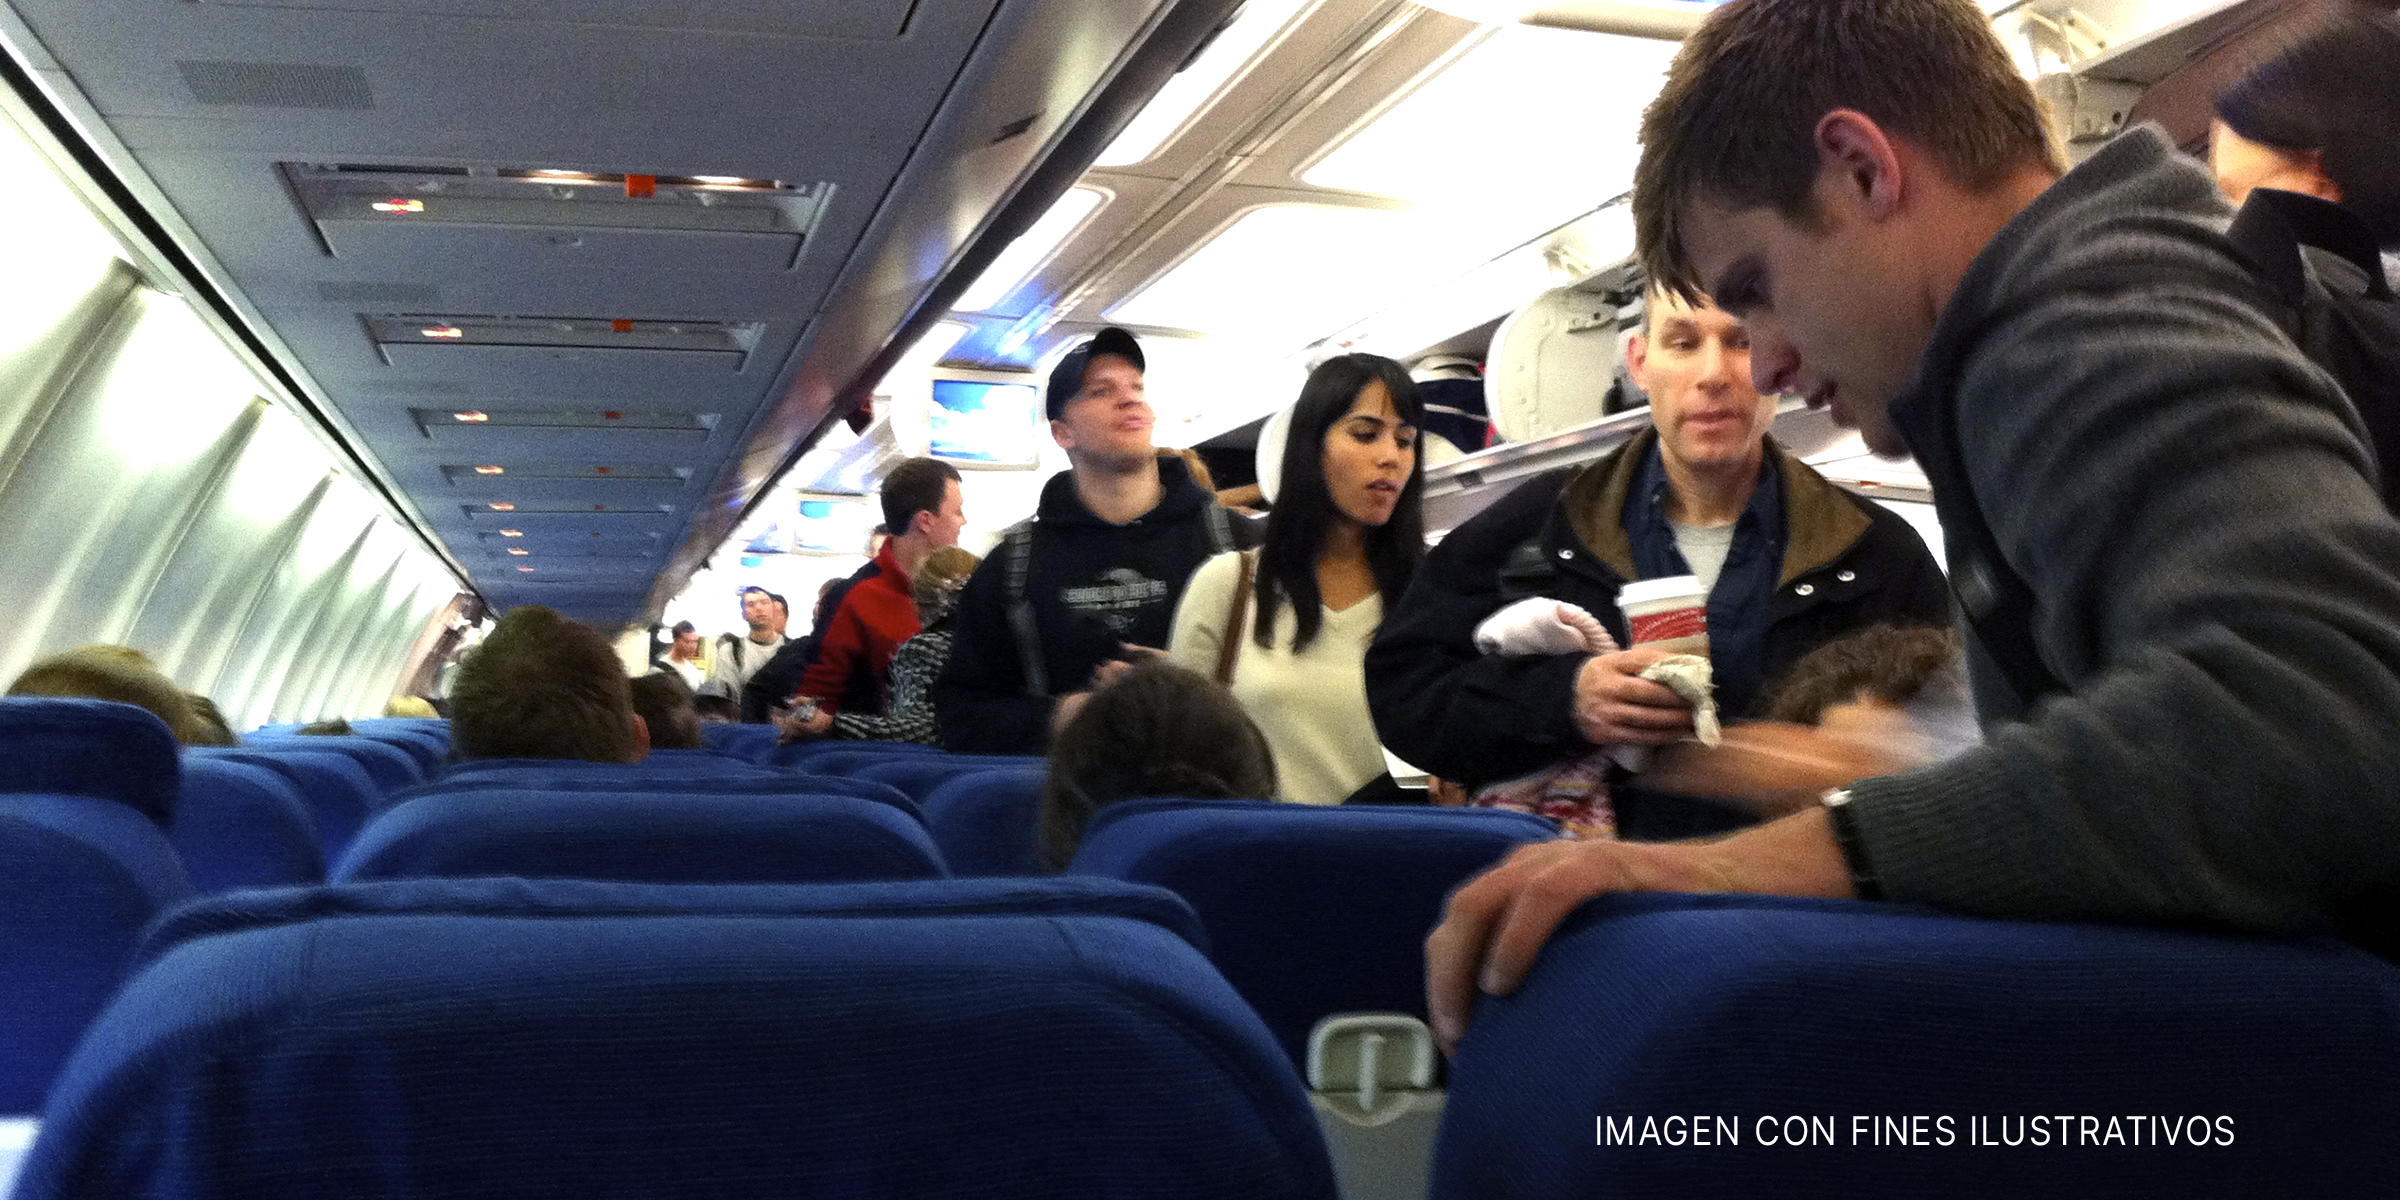 Pasajeros dentro de un avión | Foto: flickr.com/CC BY-SA 2.0/MattHurst